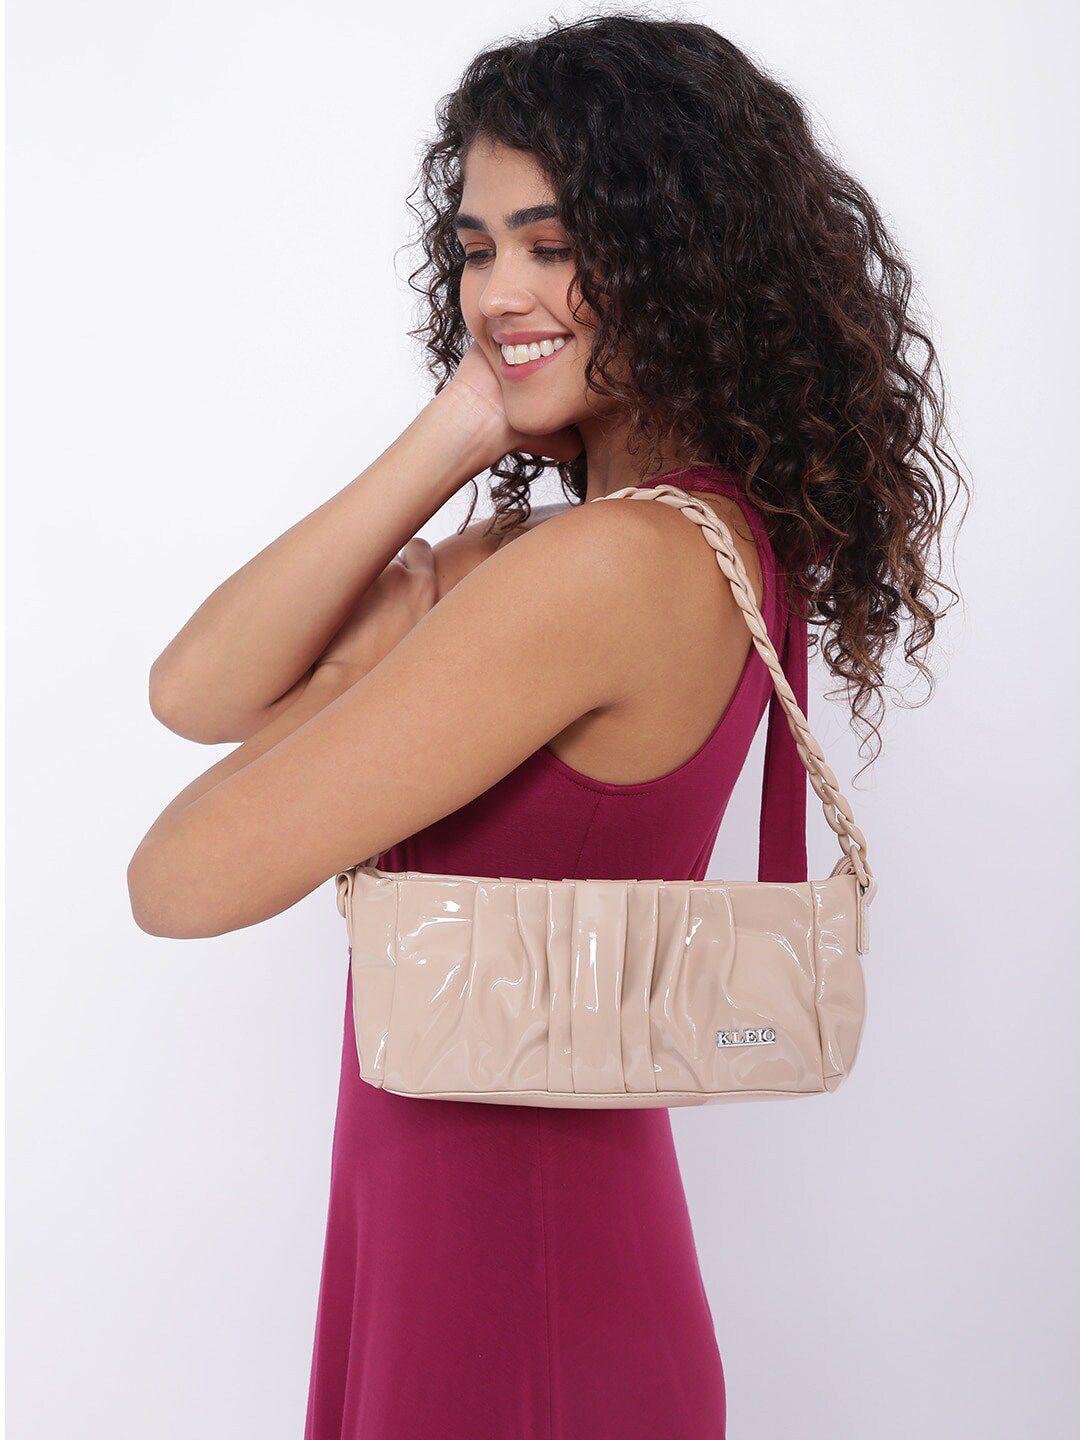 kleio sleek party shoulder bag for girls